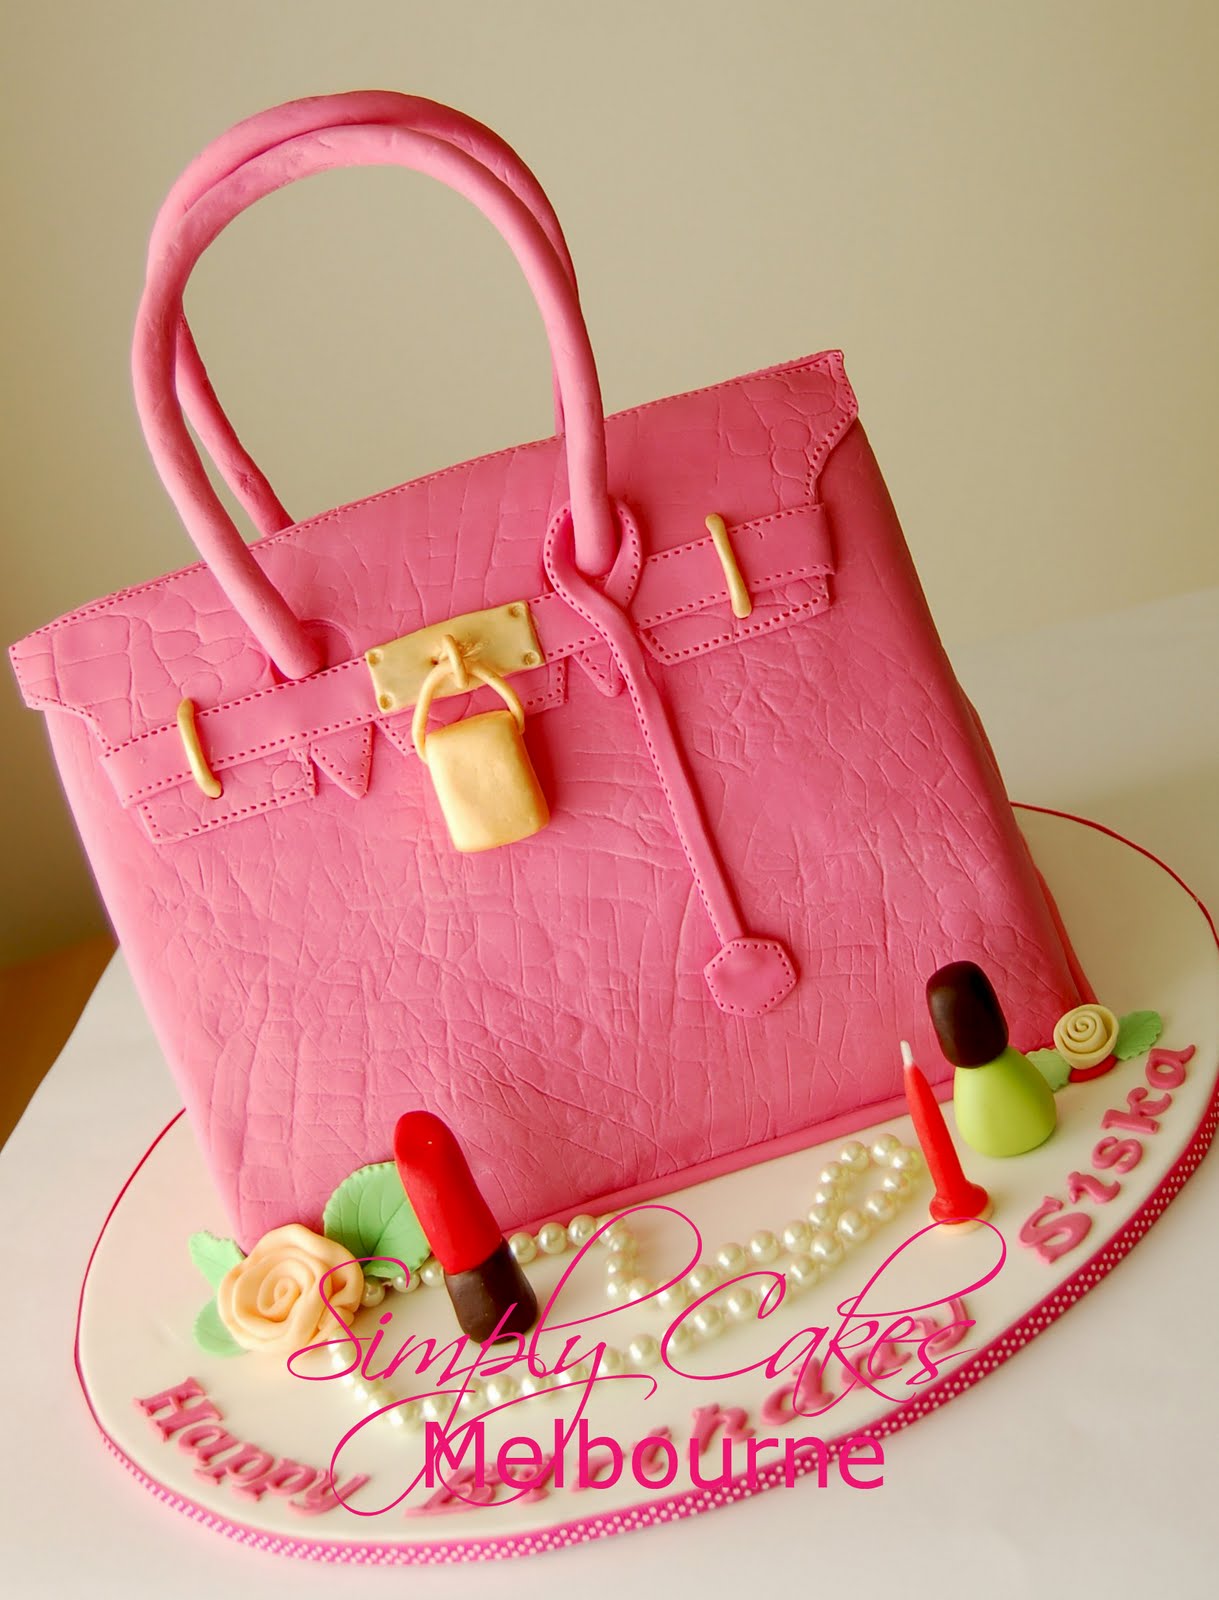 Simply Cakes Melbourne: Louis Vuitton Bag cake